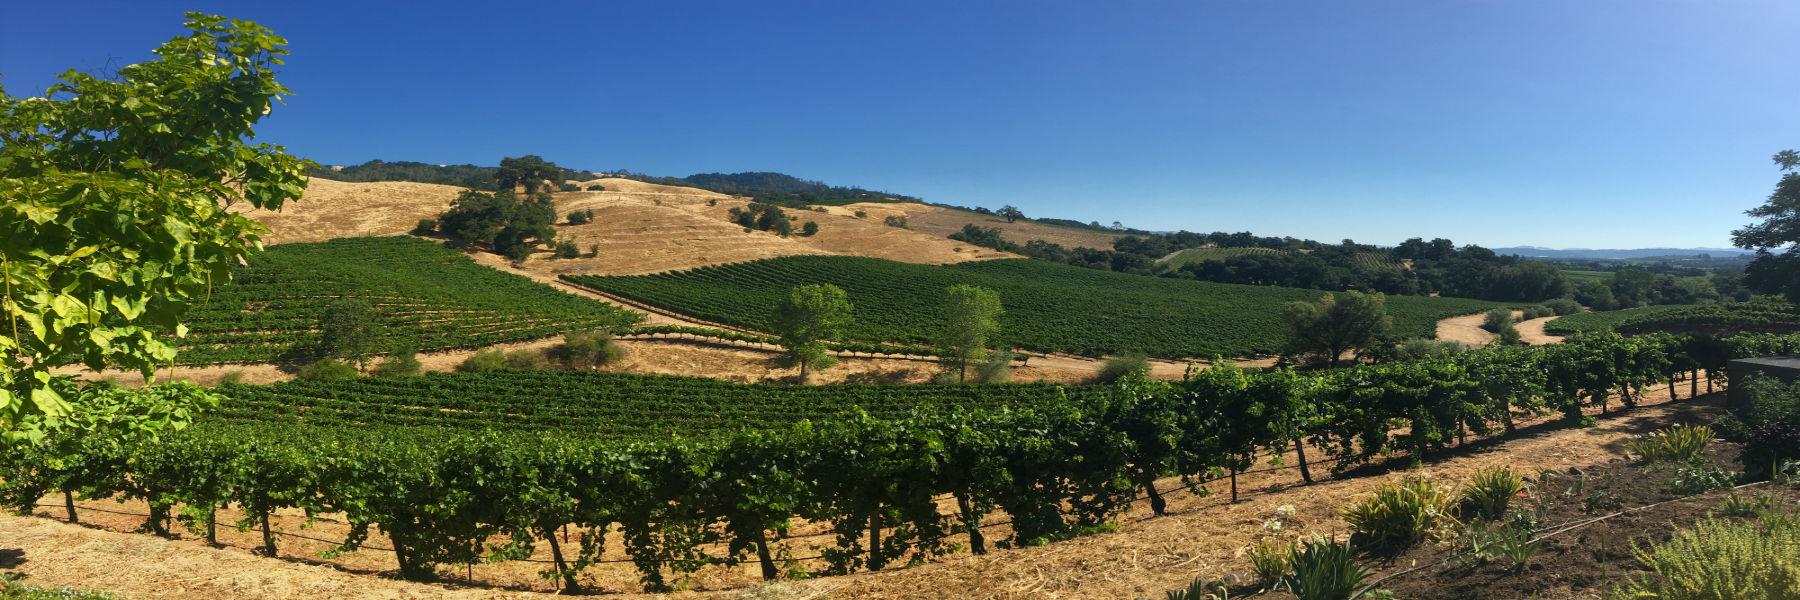 Vineyard on hill slope